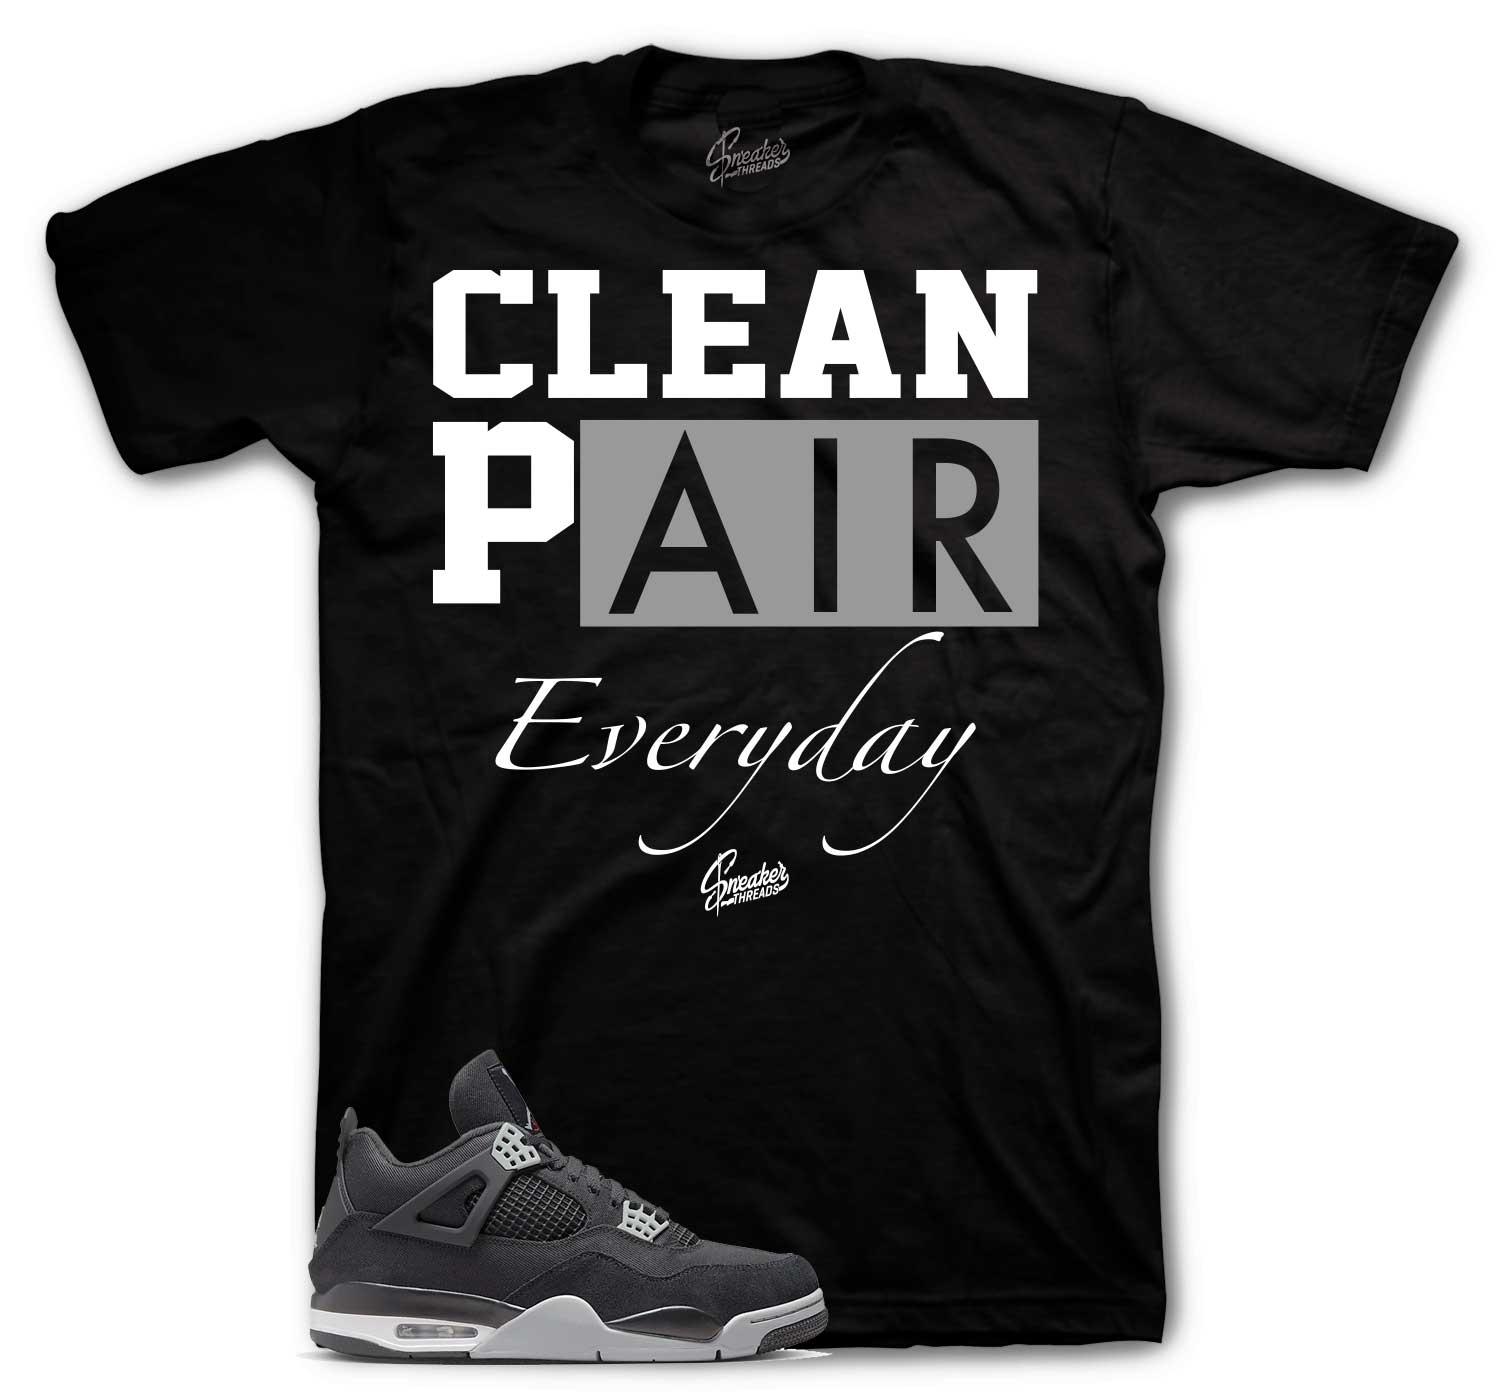 Retro 4 Black Canvas Shirt - Clean Pair - Black